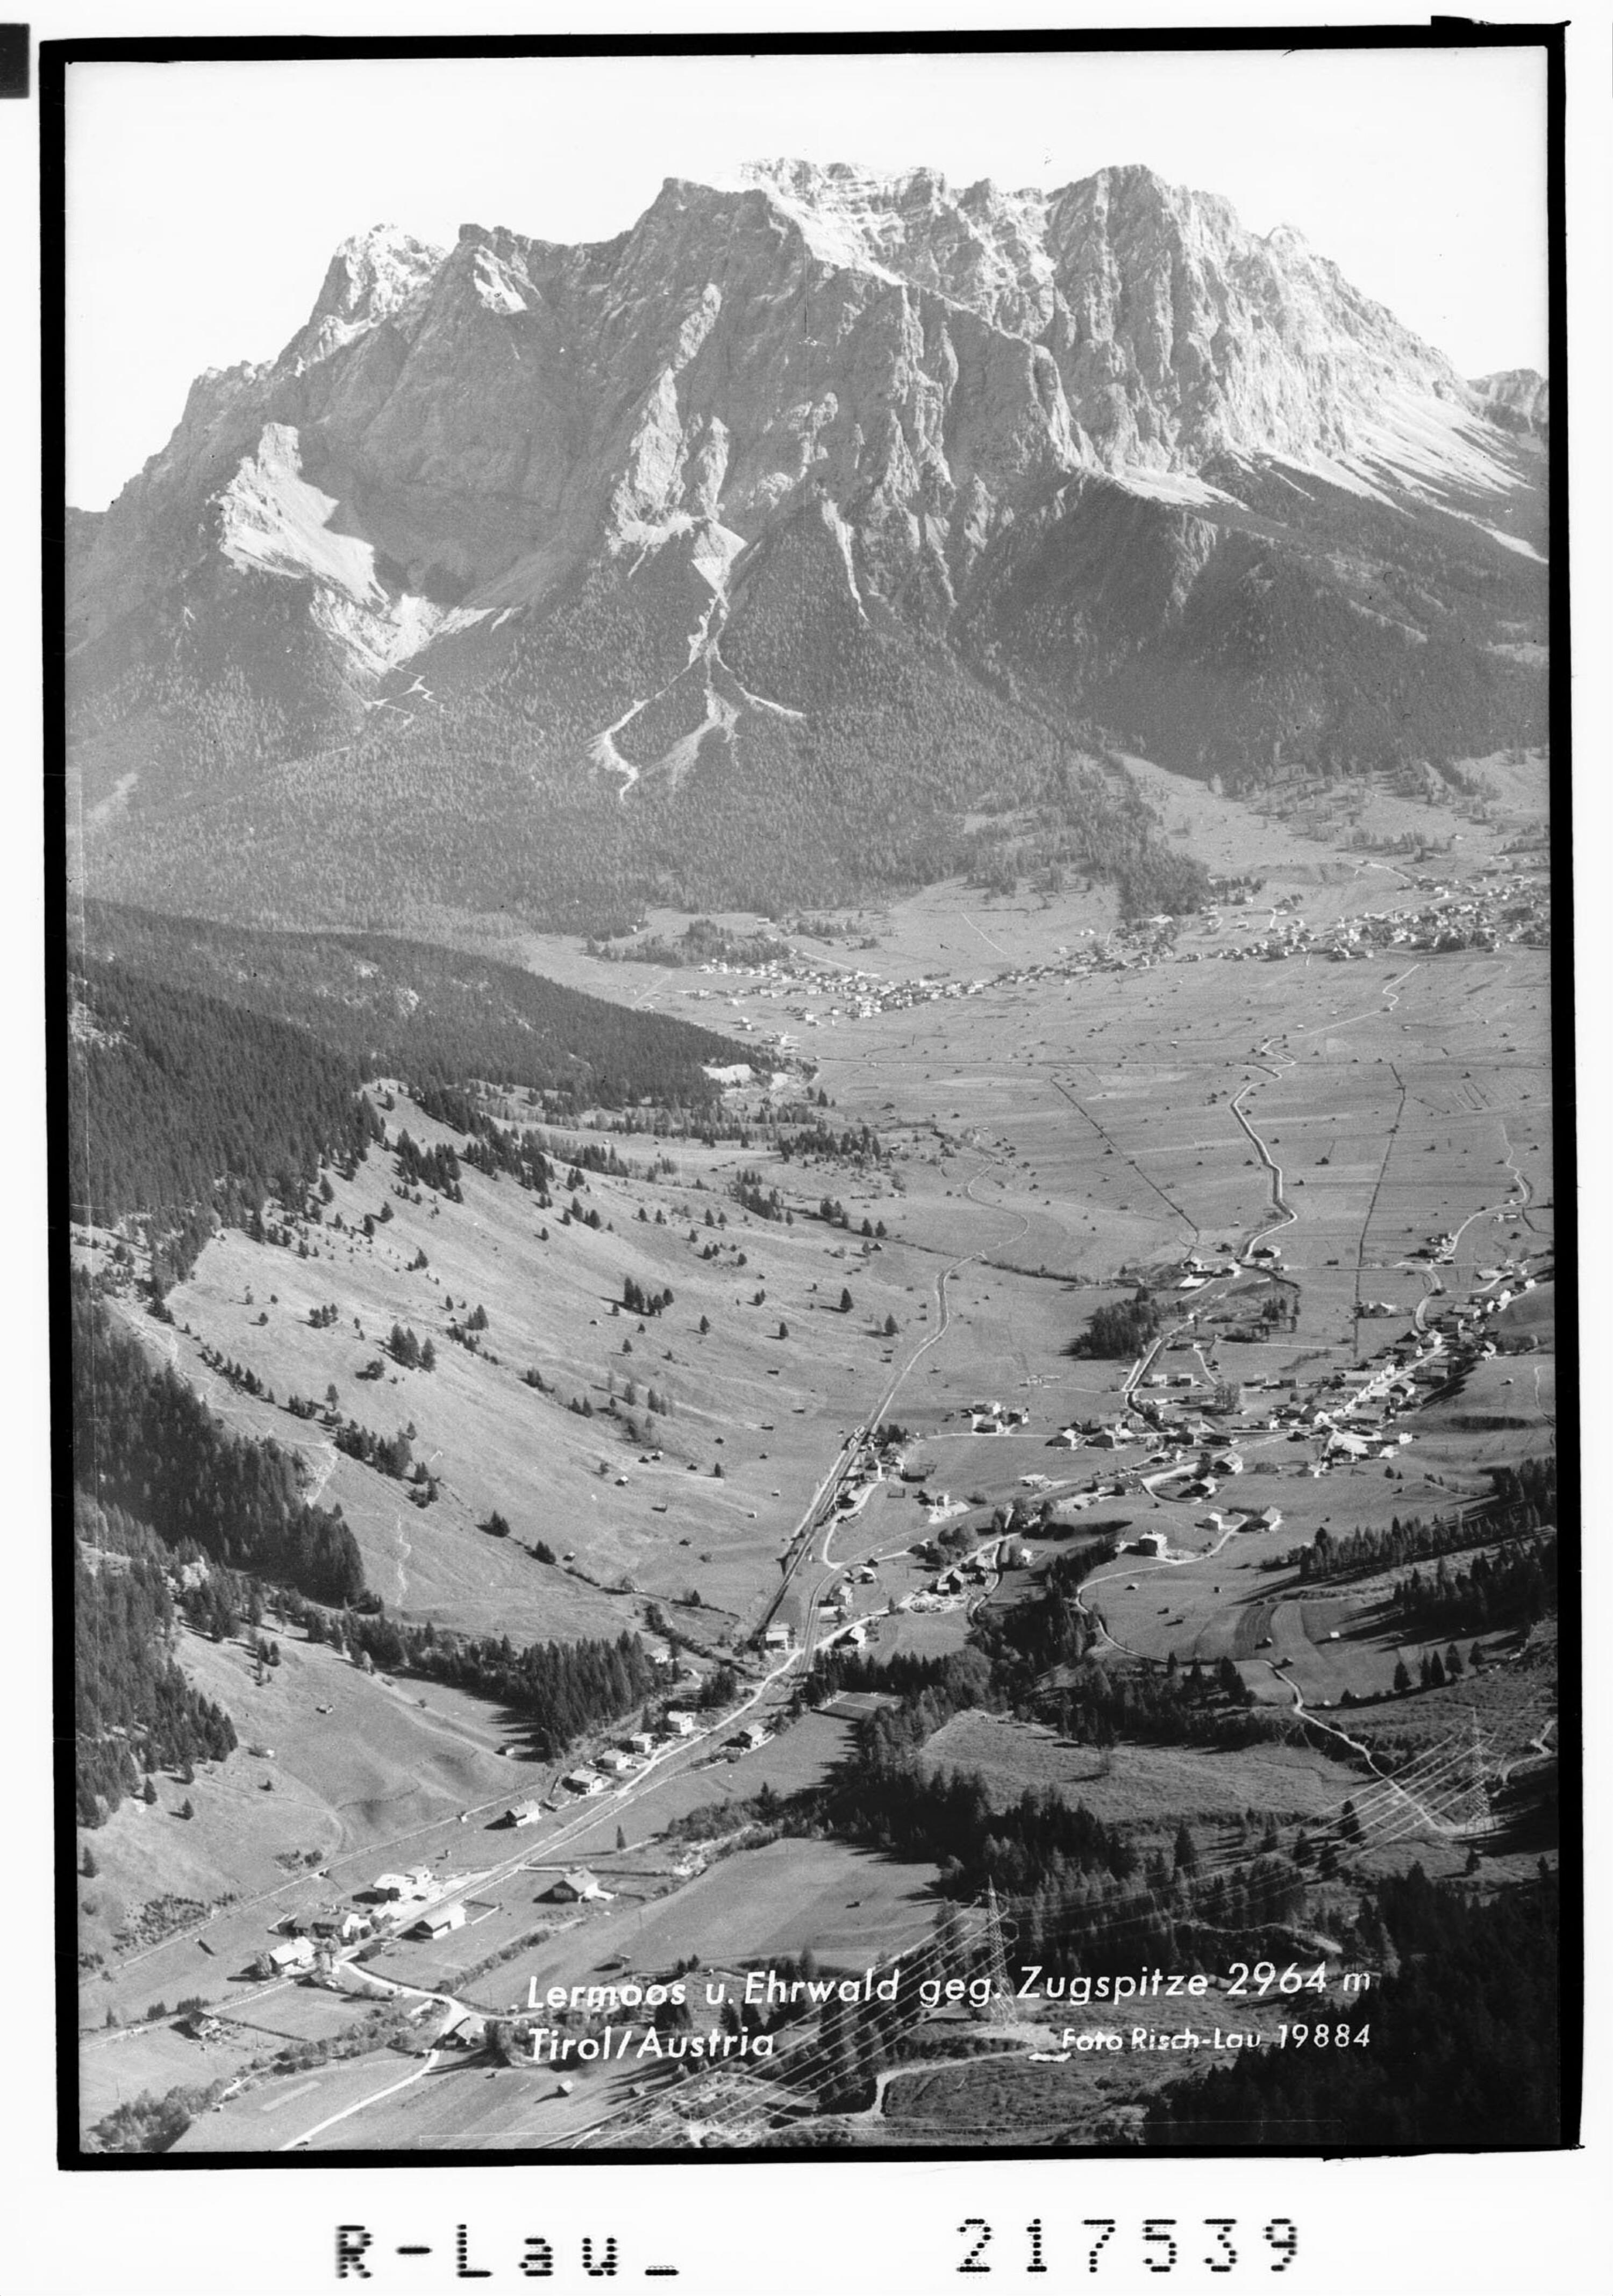 Lermoos und Ehrwald gegen Zugspitze 2963 m></div>


    <hr>
    <div class=